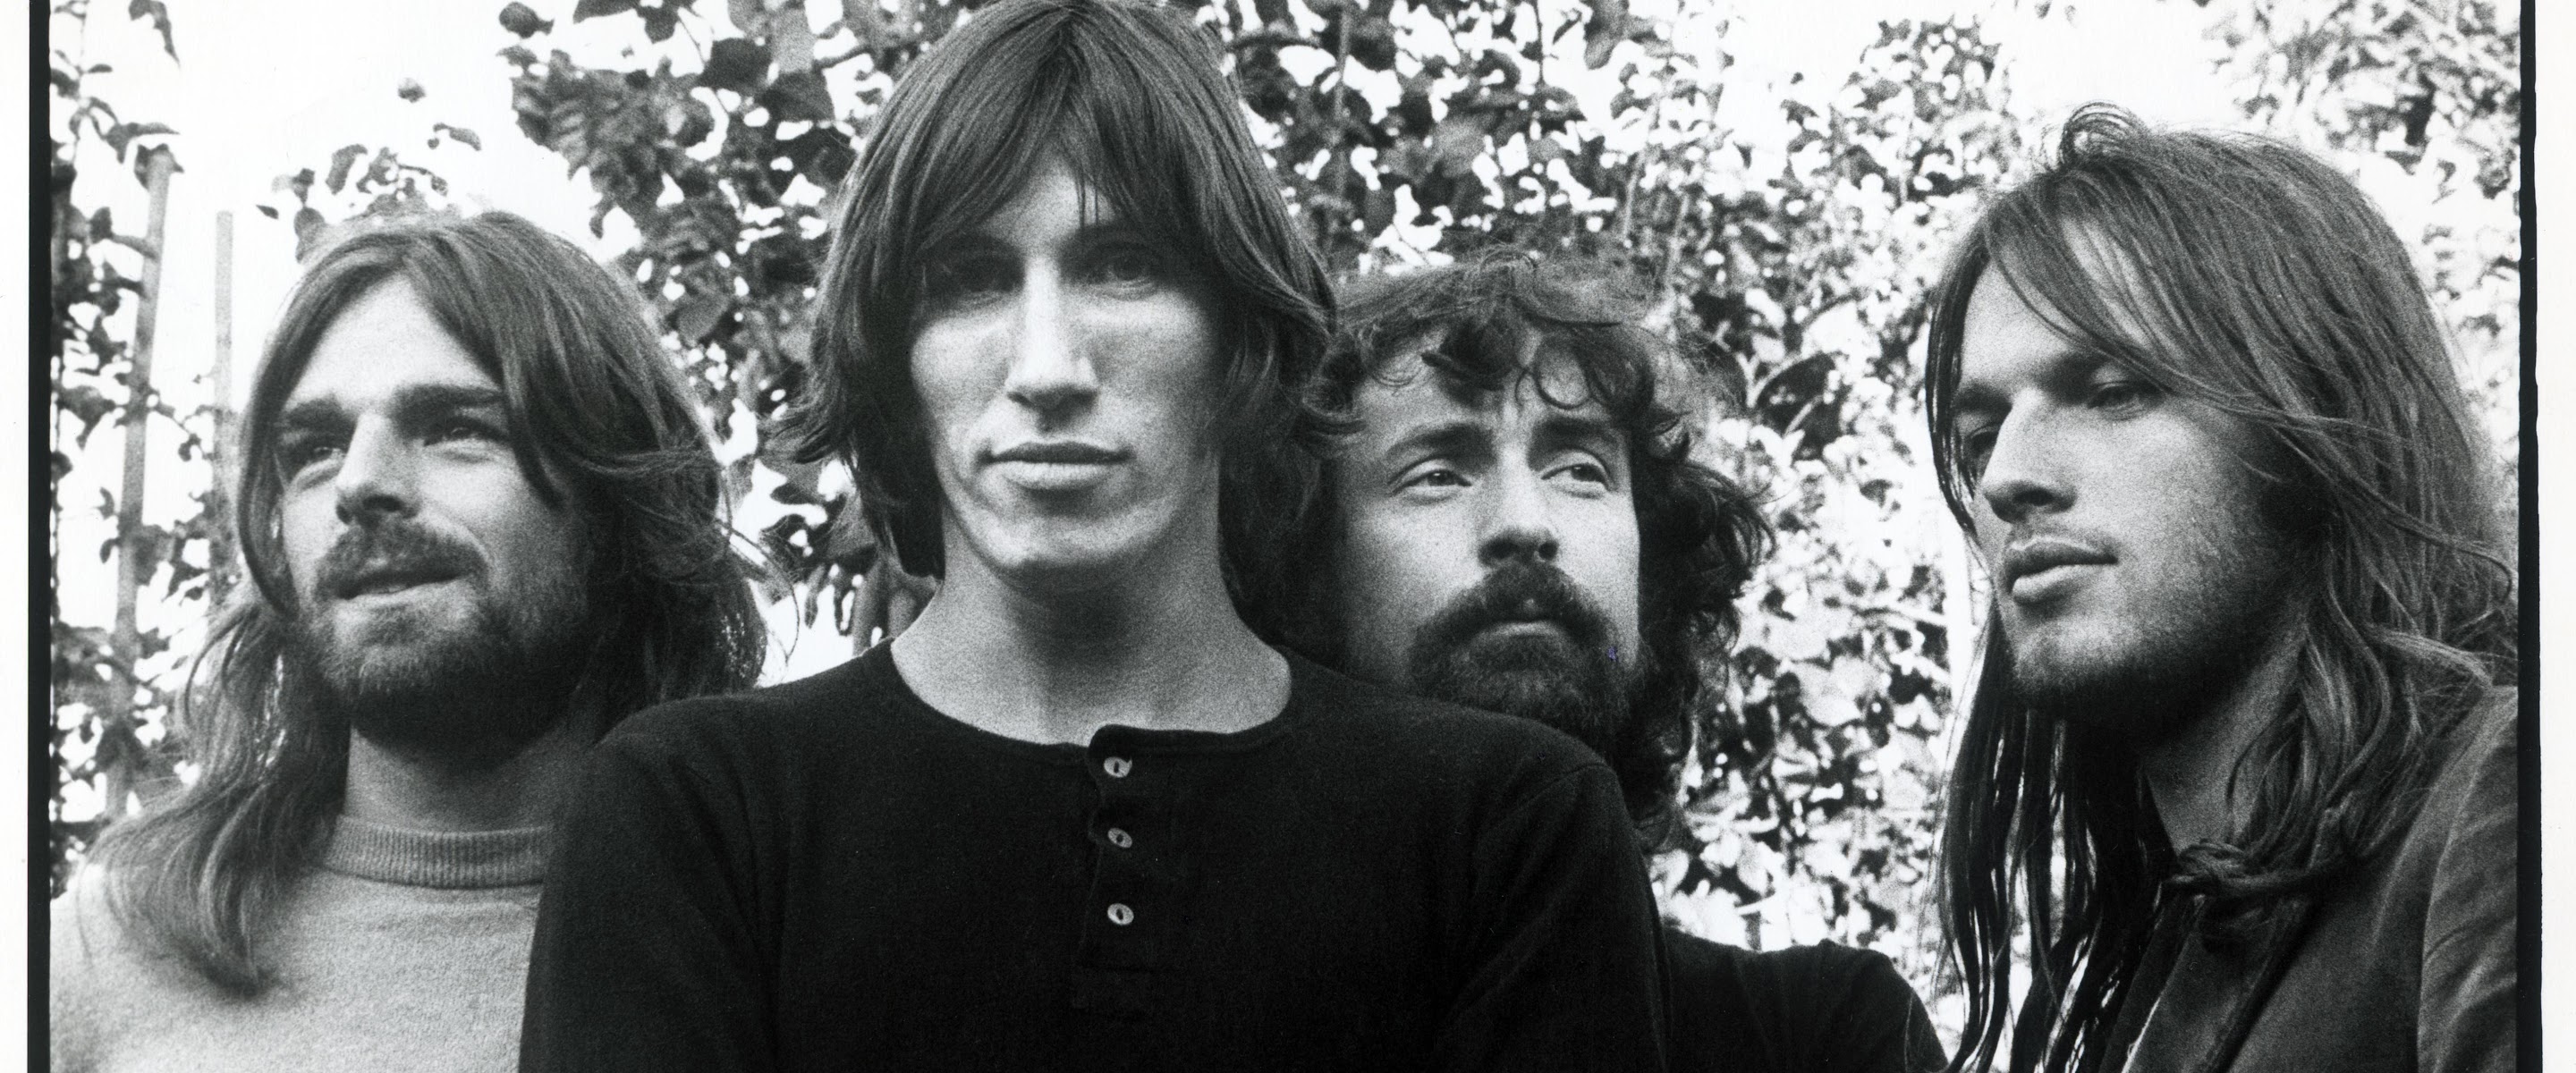 Makna dan Lirik Lagu Another Brick In The Wall (Part 2) - Pink Floyd Beserta Terjemahannya